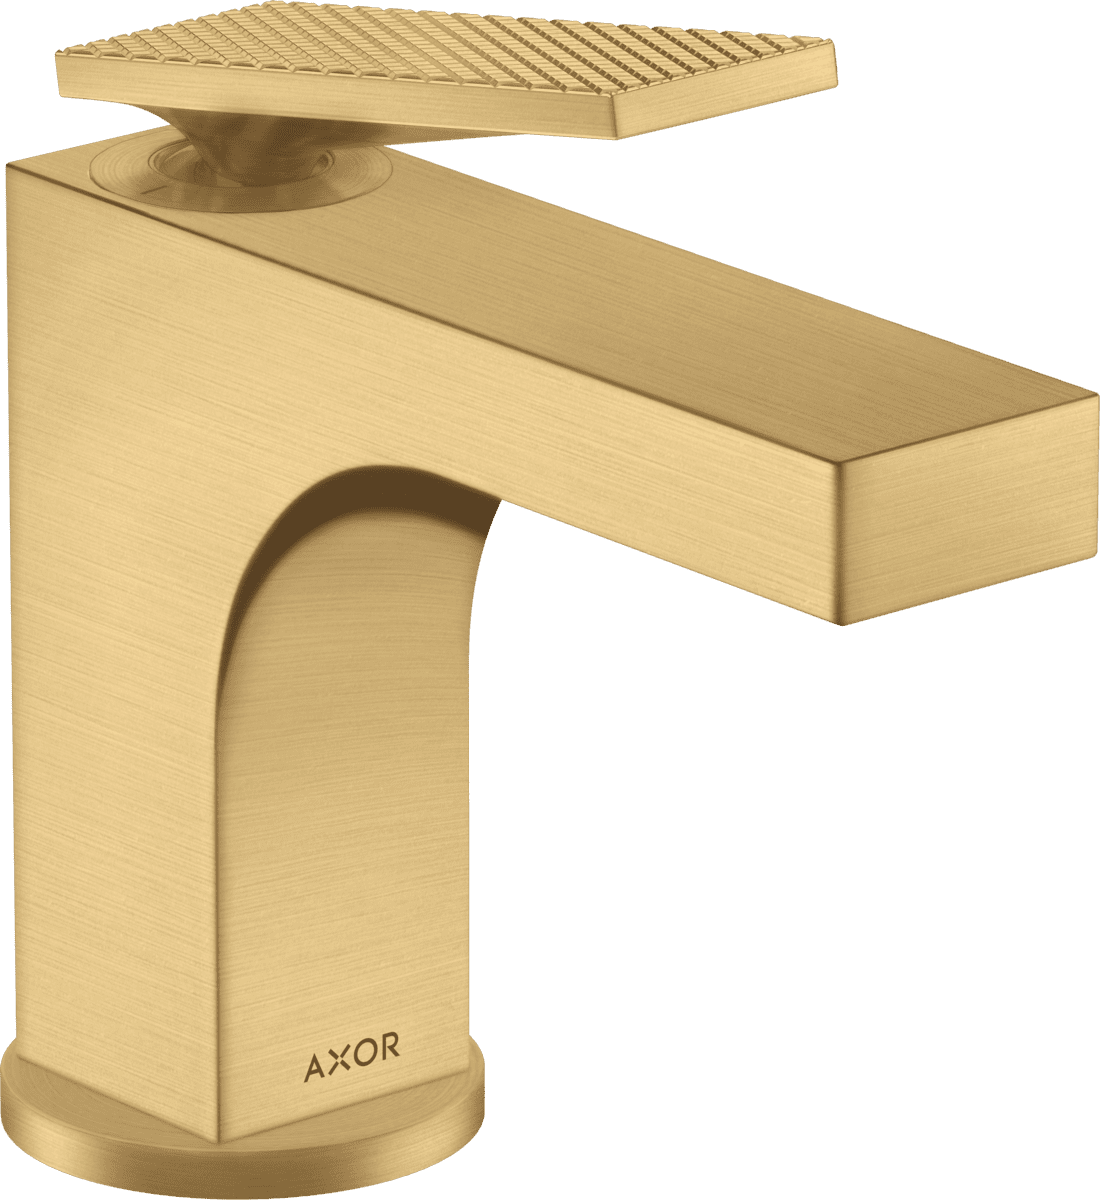 Bild von HANSGROHE AXOR Citterio Einhebel-Waschtischmischer 90 mit Hebelgriff für Handwaschbecken mit Zugstangen-Ablaufgarnitur - Rautenschliff #39001250 - Brushed Gold Optic